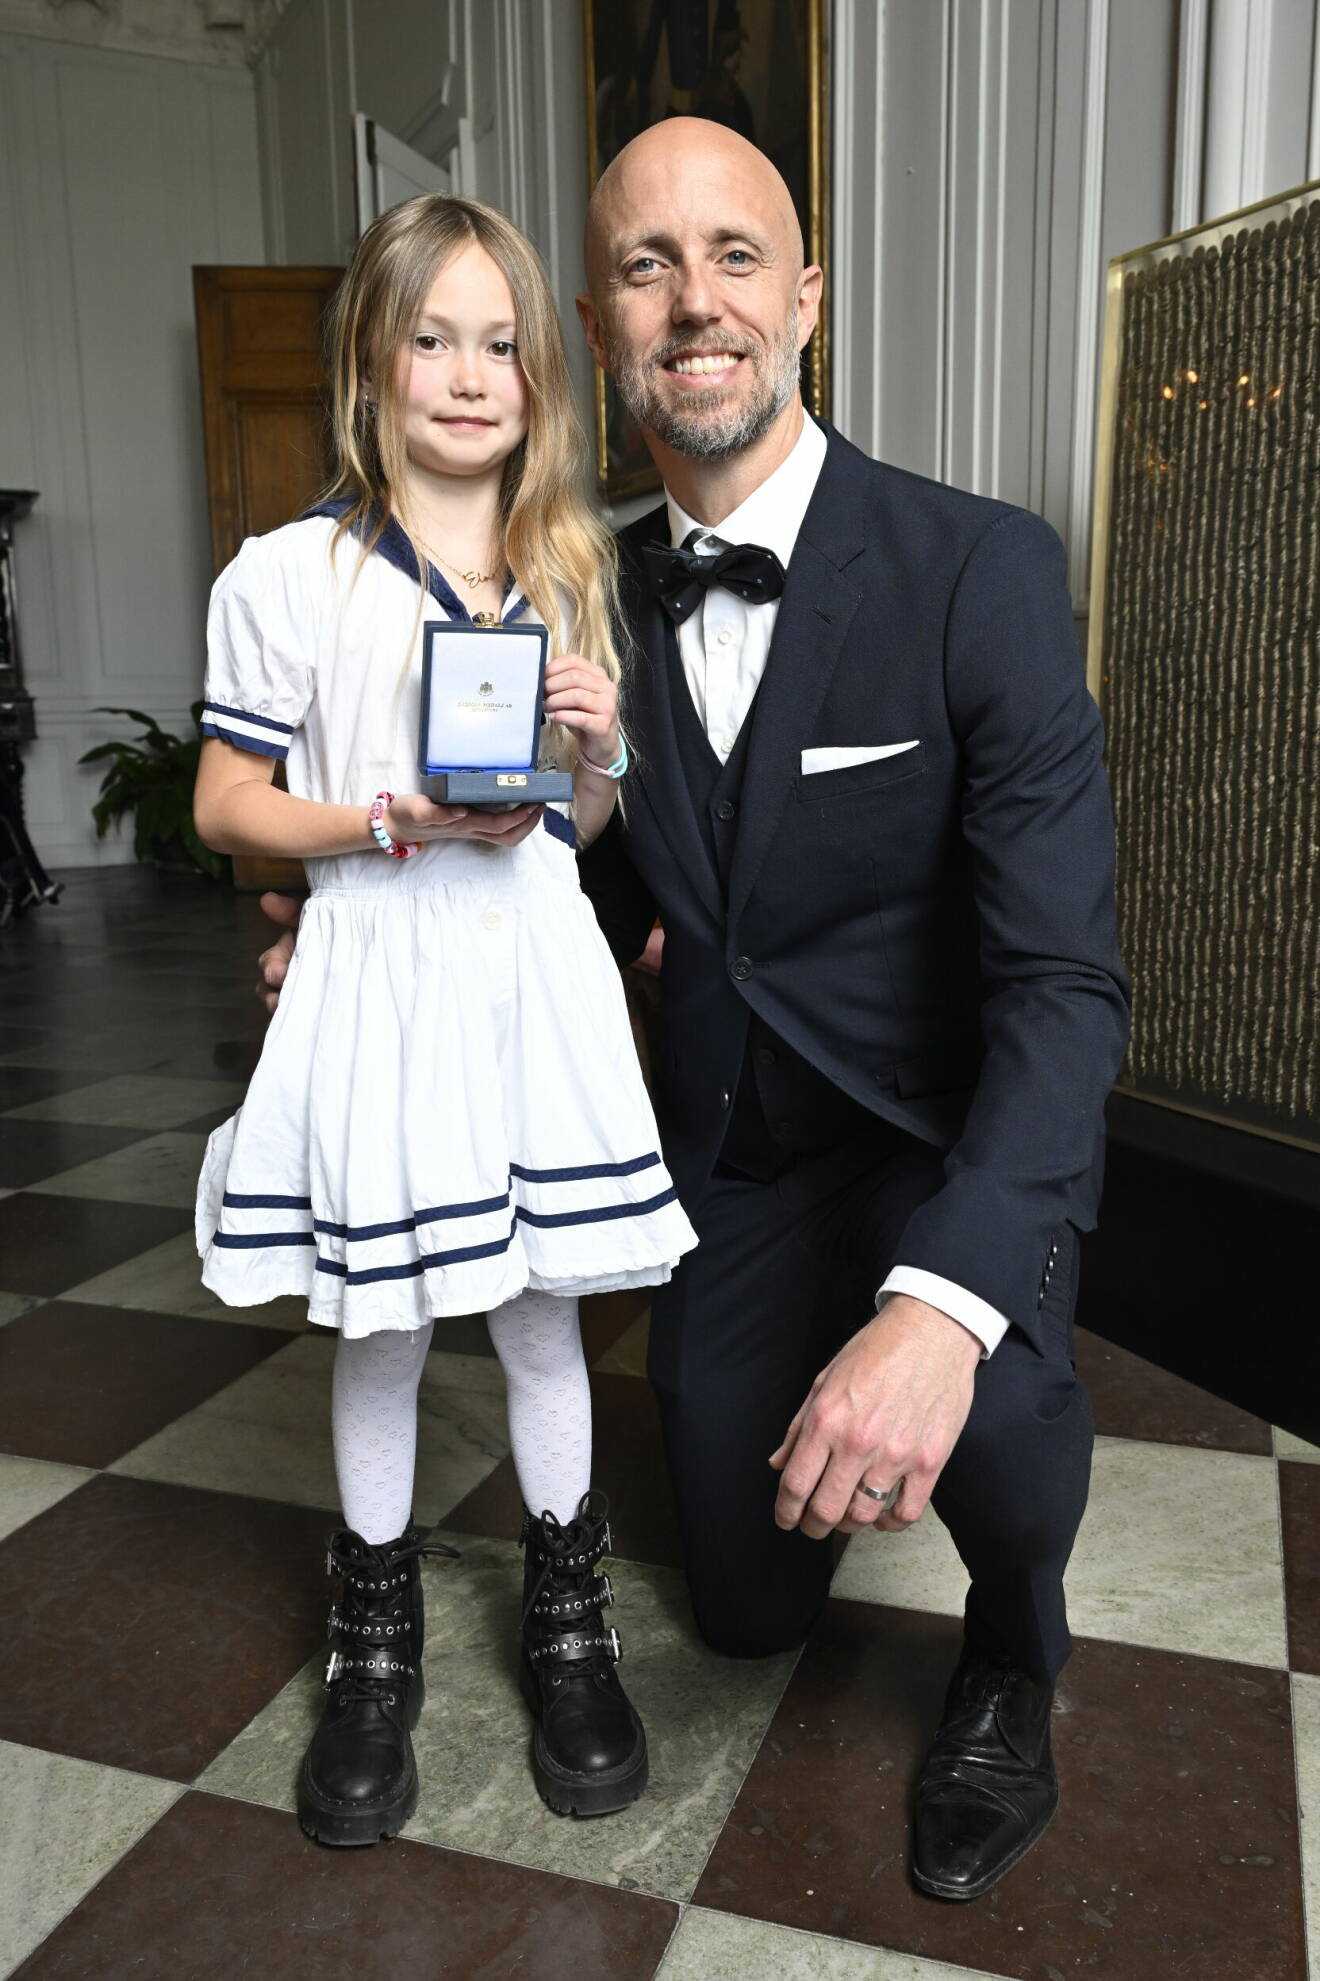 Simmaren Lars Frölander med sin dottern Lykke vid medaljutdelning på slottet